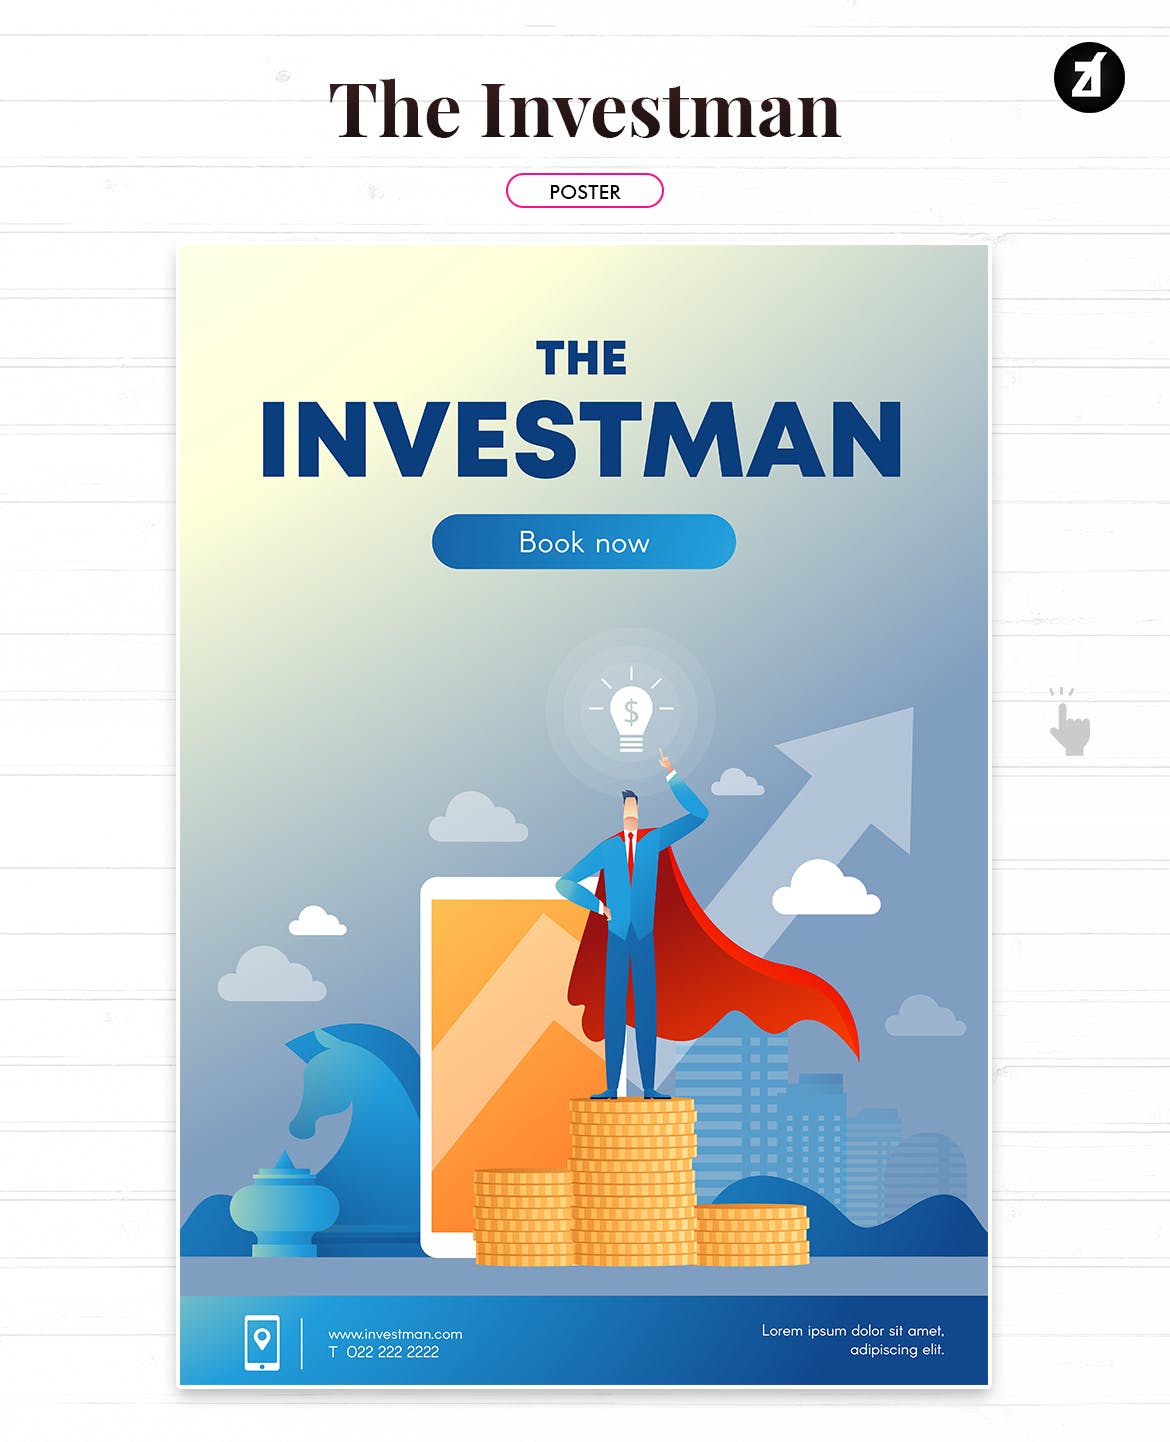 投资者主题矢量16设计网精选概念插画素材 The investman illustration with text layout插图(1)